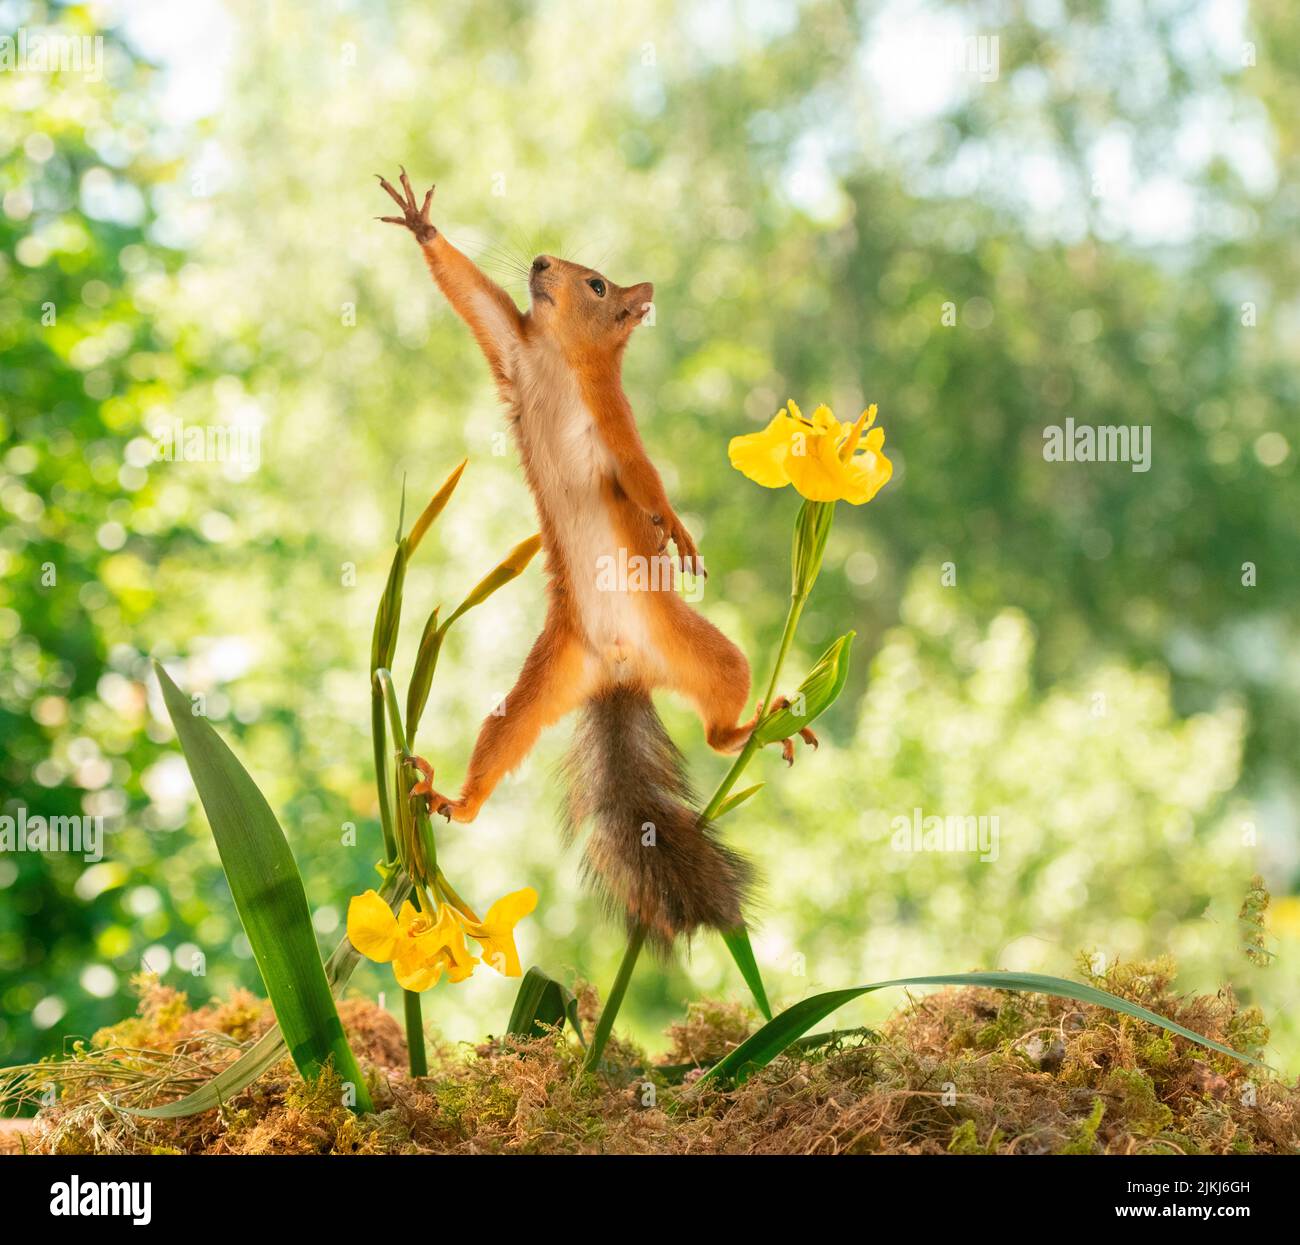 Red Squirrel standing between iris flowers Stock Photo